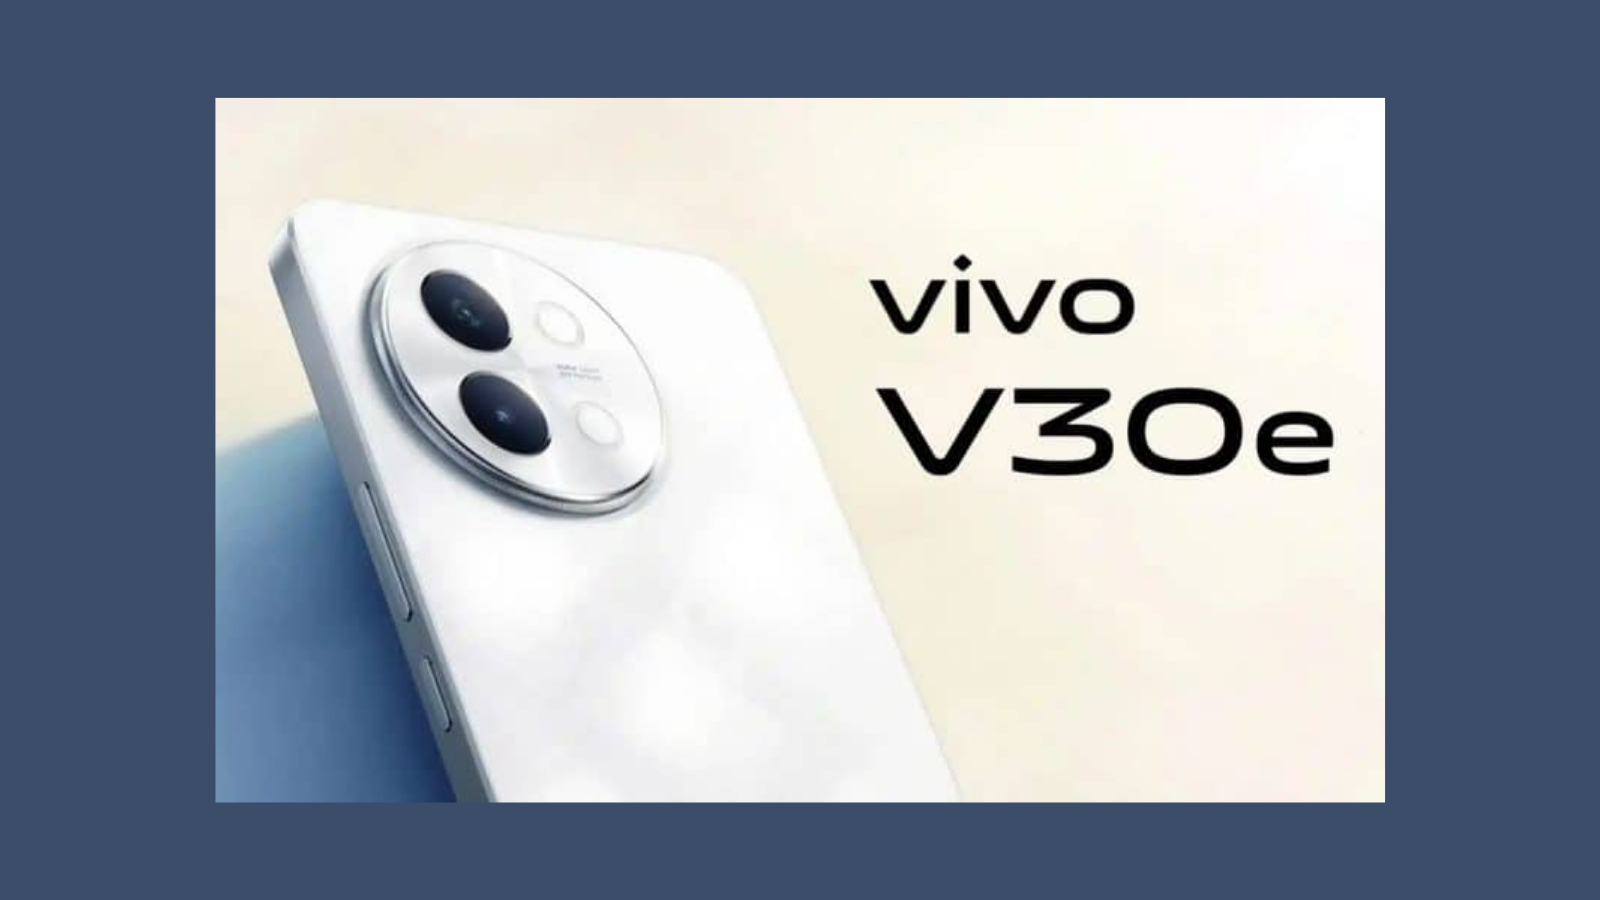 Rakiplerine Meydan Okuyor: Vivo'nun Yeni Telefonu Hem Güçlü Hem de Uygun!